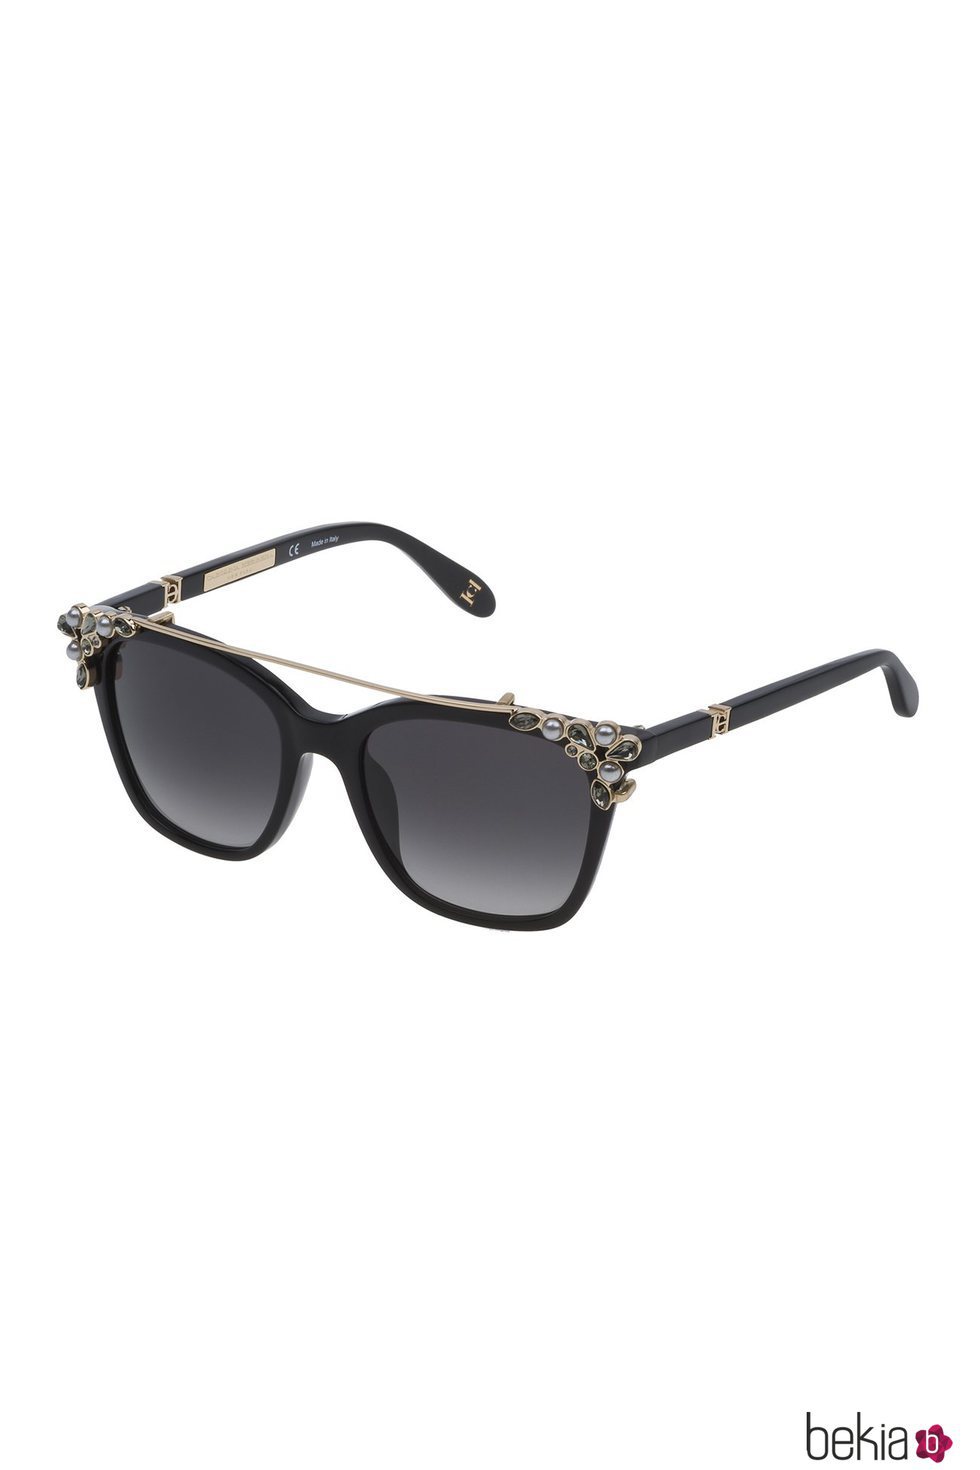 Carolina Herra presenta su nuevo modelo de gafas en color negro con el clip-on en dorado y tonos plateados 2018